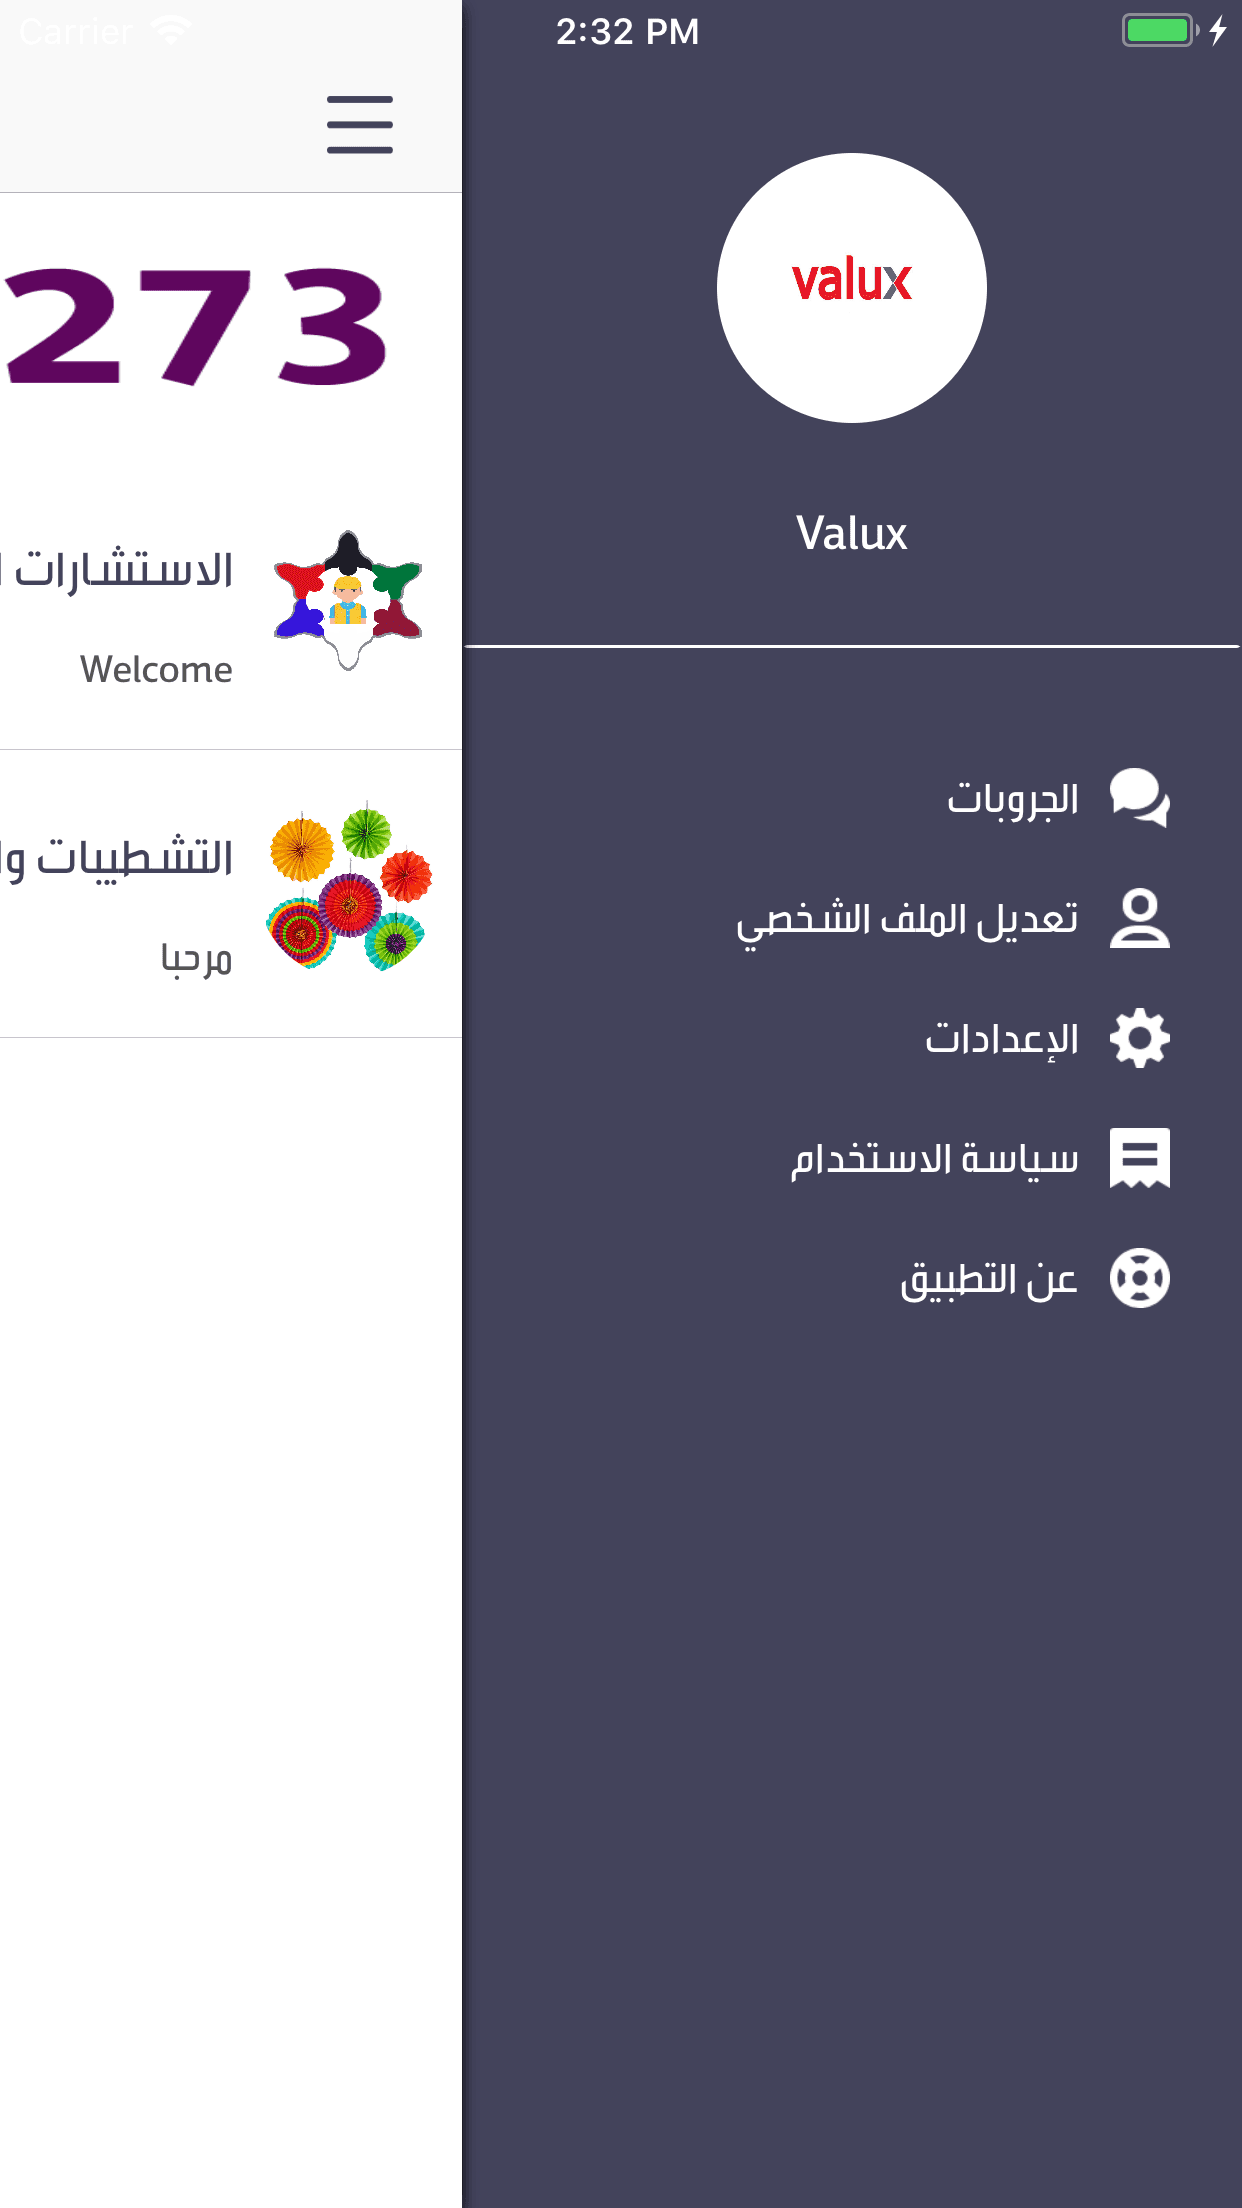 Valux - البيت الكويتي الخليجي